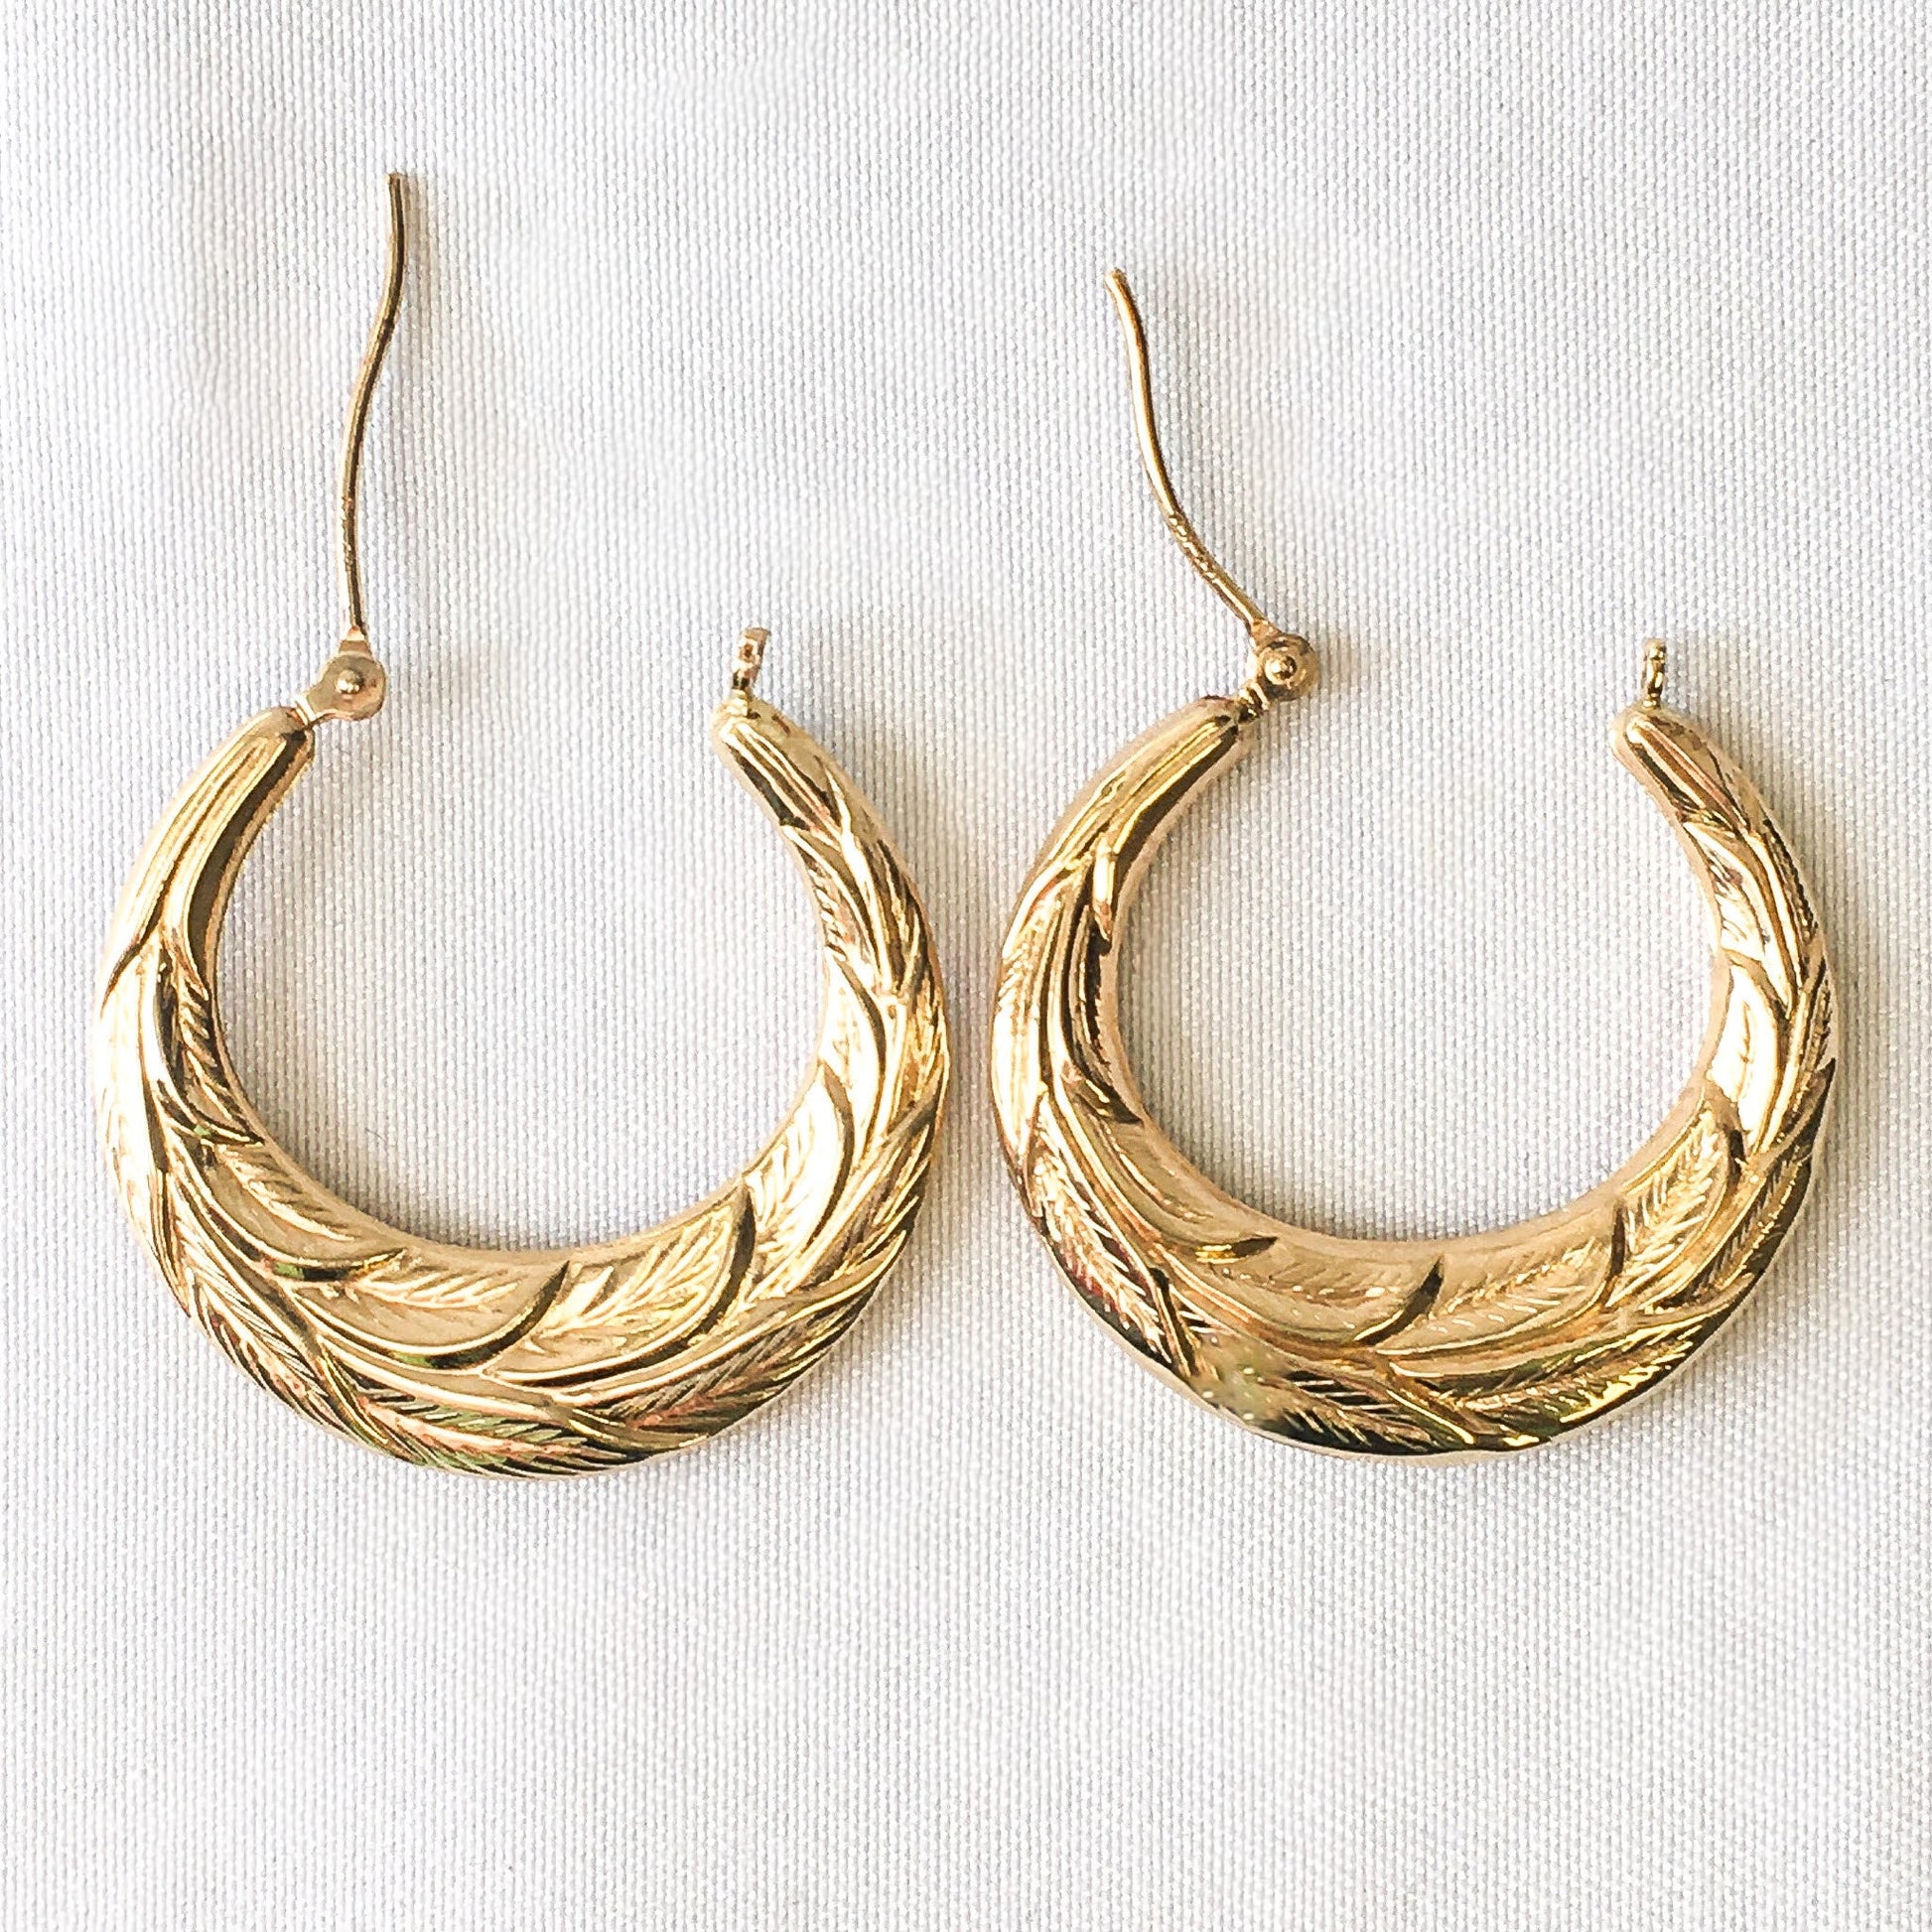 Vintage 14k Gold Leaf Textured JCM Hoop Earrings, Vintage 90's Earrings